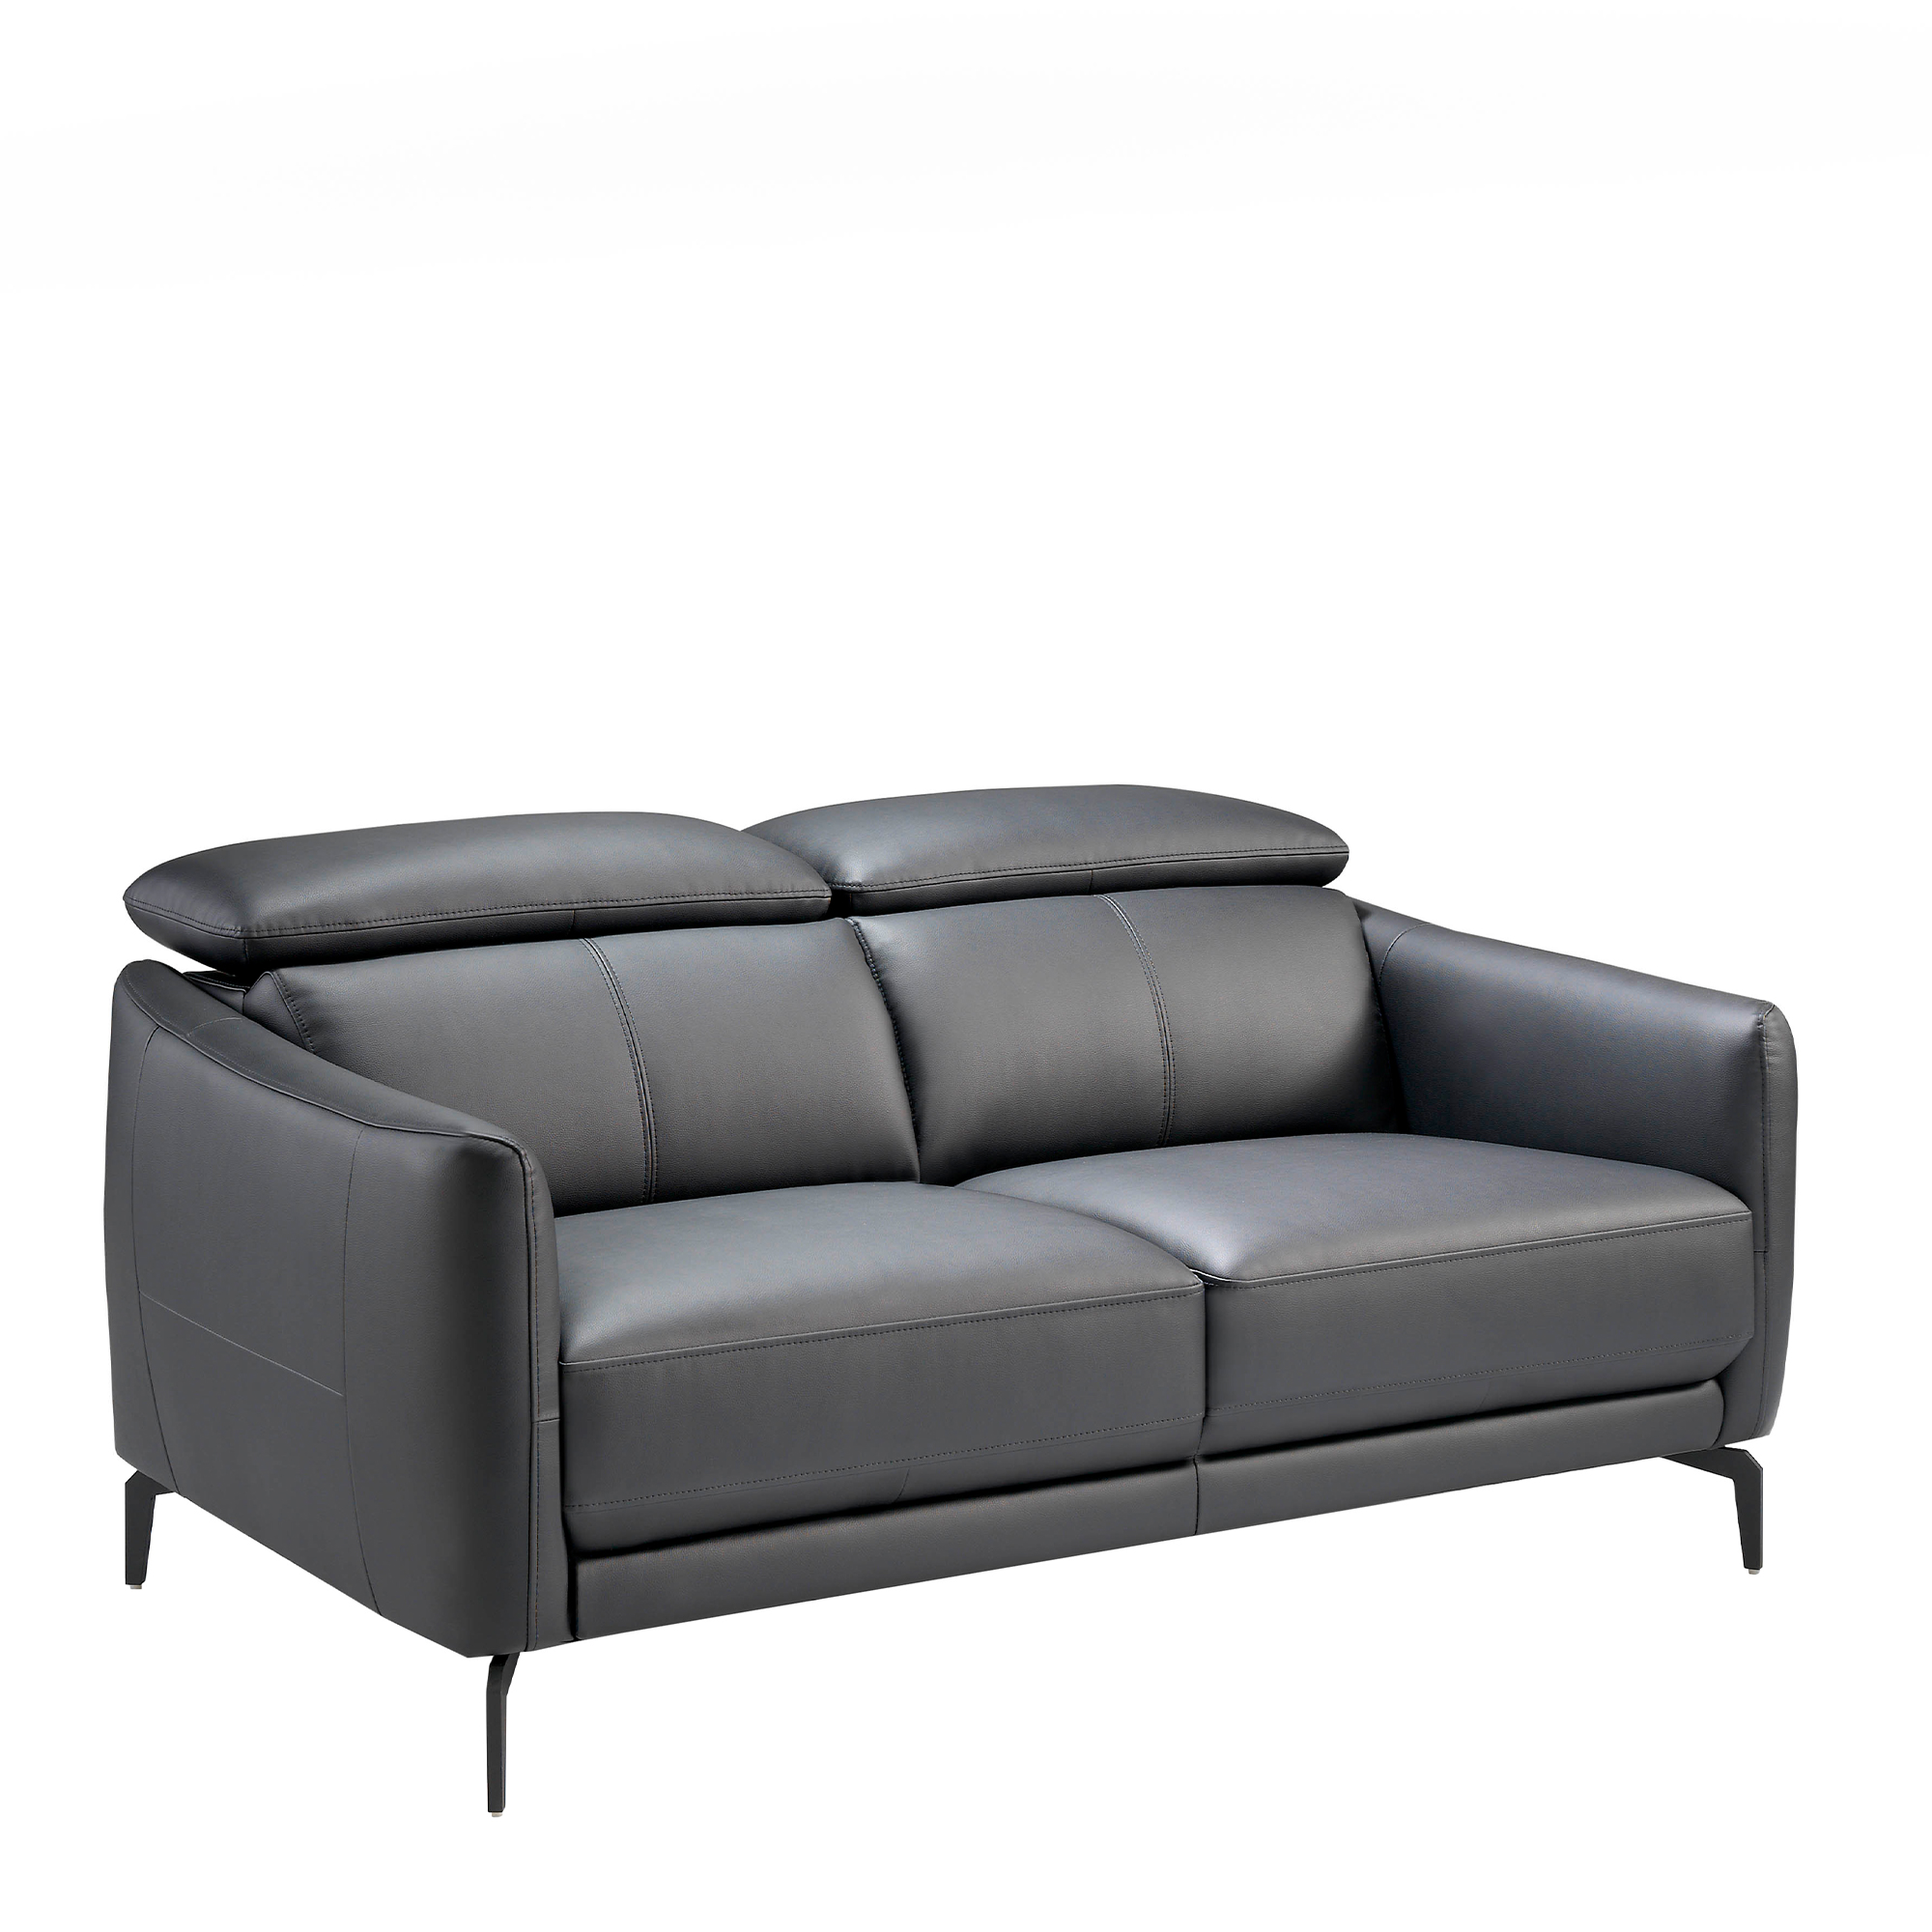 2-Sitzer-Sofa mit Lederbezug und schwarzen Stahlbeinen